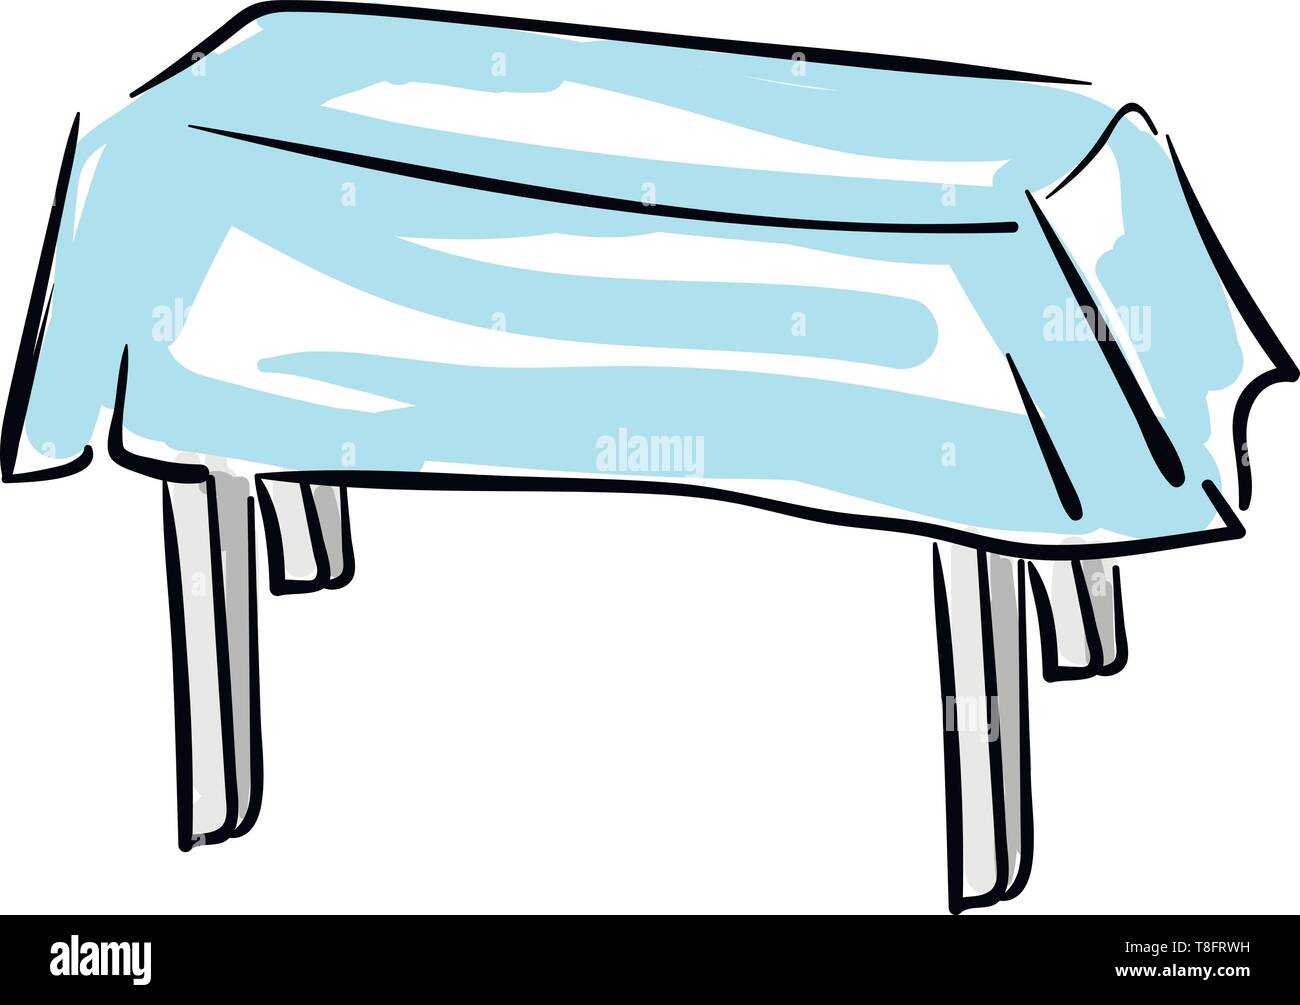 Kind einen hölzernen Tisch in Grau lackiert, mit einem blauen Tischdecke bedeckt, hat vier Beine, auf weißem Hintergrund, Vector, Farbe, Zeichnung oder Abbildung. Stock Vektor